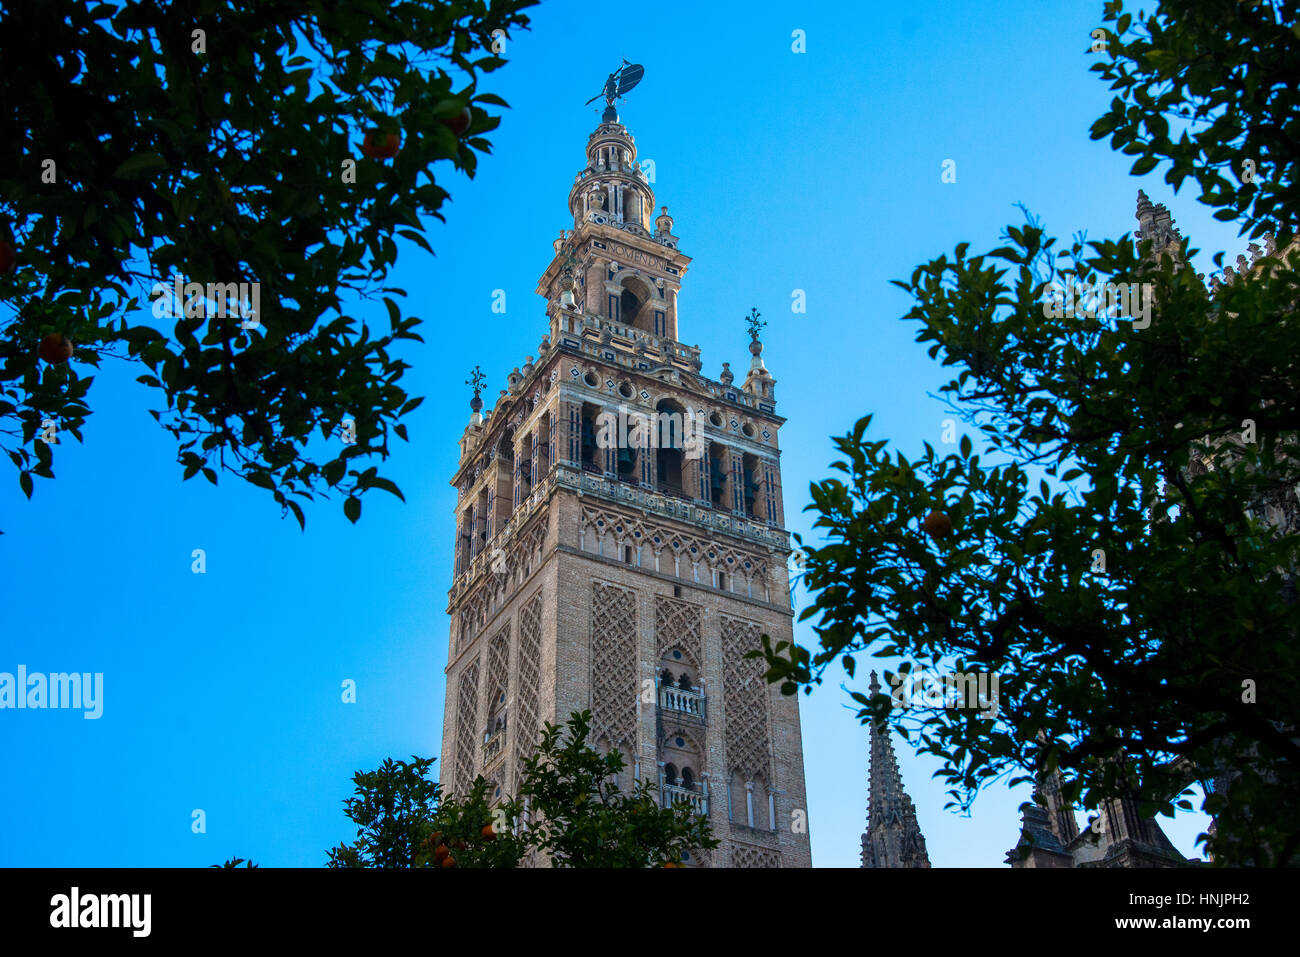 Clocktower catedral de La Giralda en Sevilla, España Foto de stock